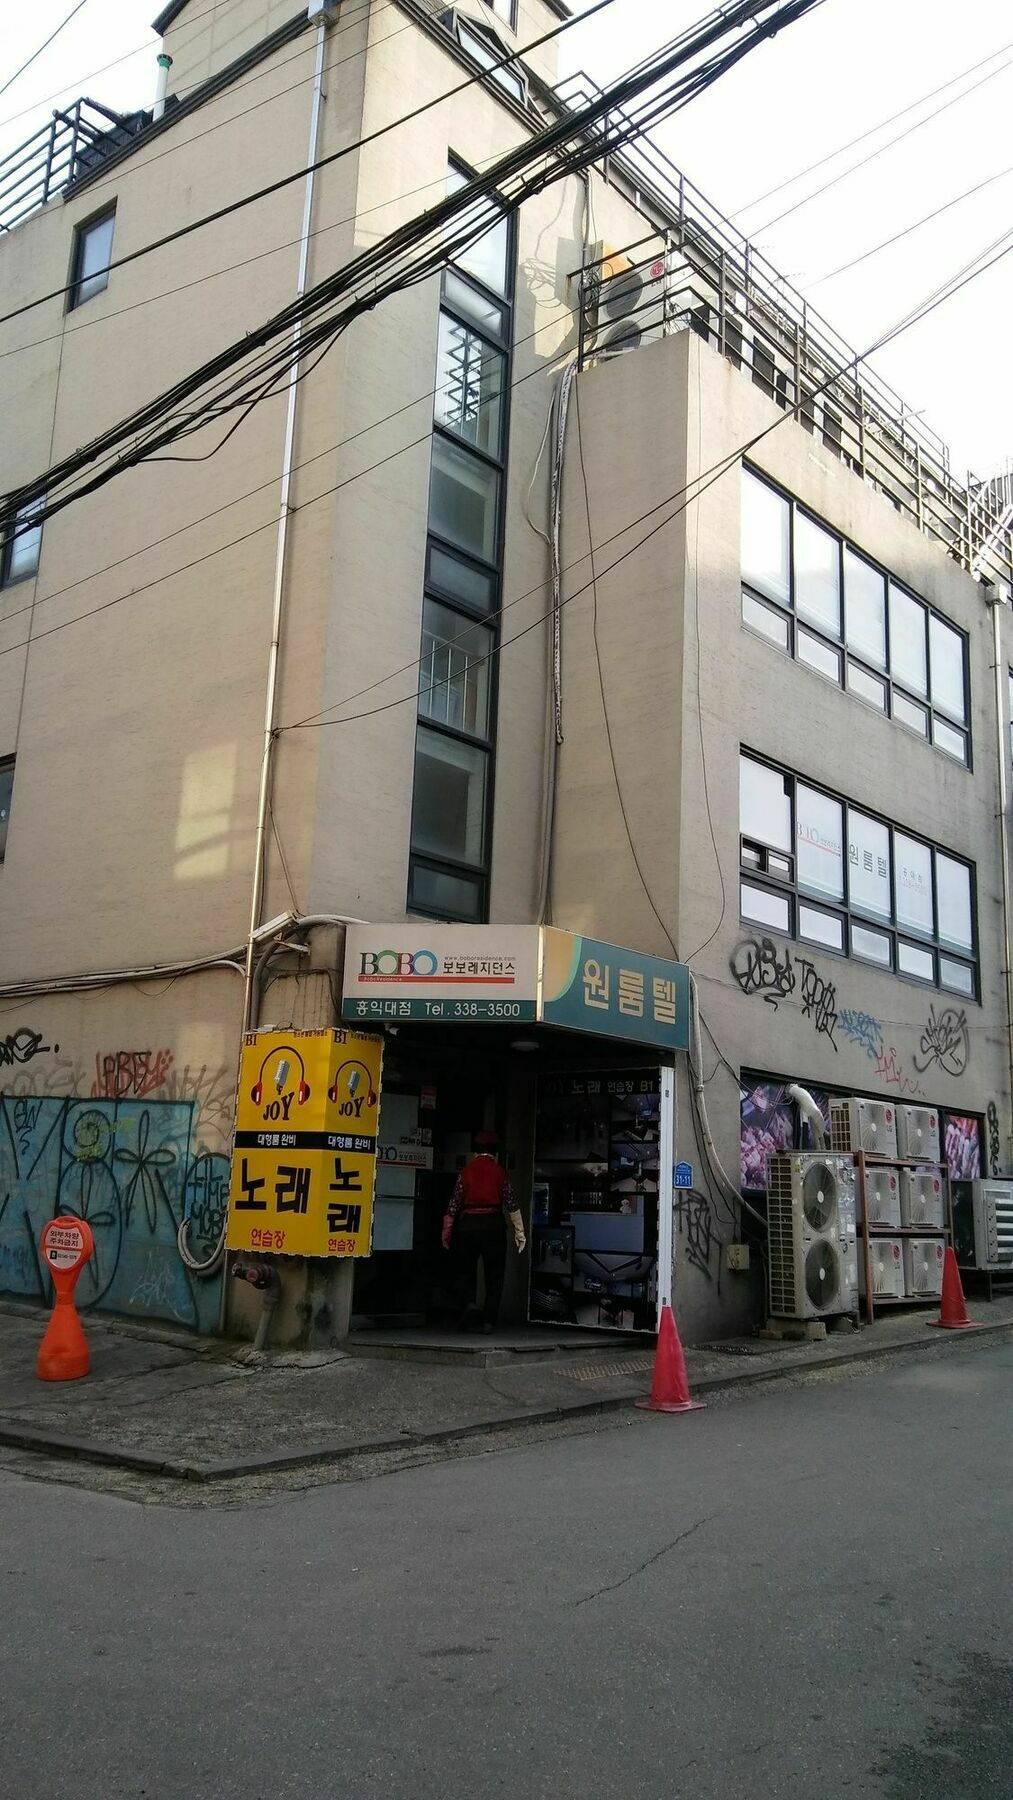 Choco Residence Seoul Luaran gambar